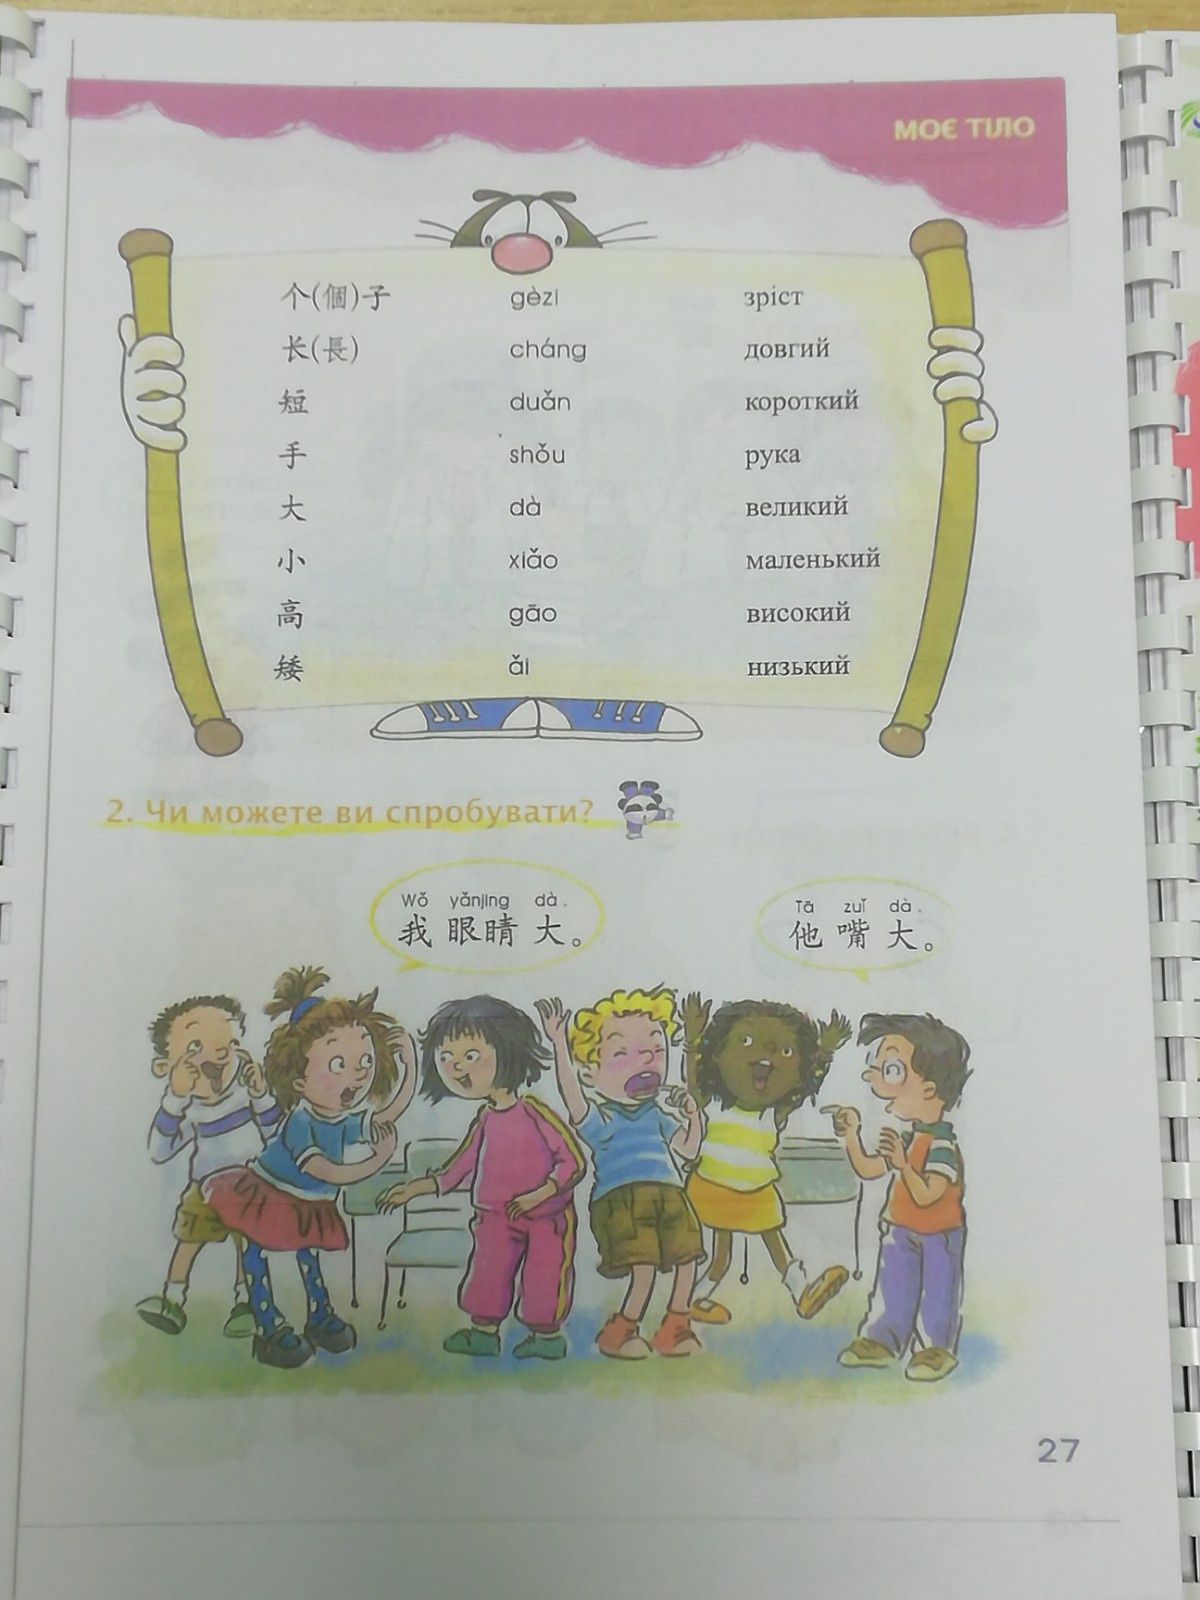 Весела китайська мова для дітей 1, 2 підручник китайської